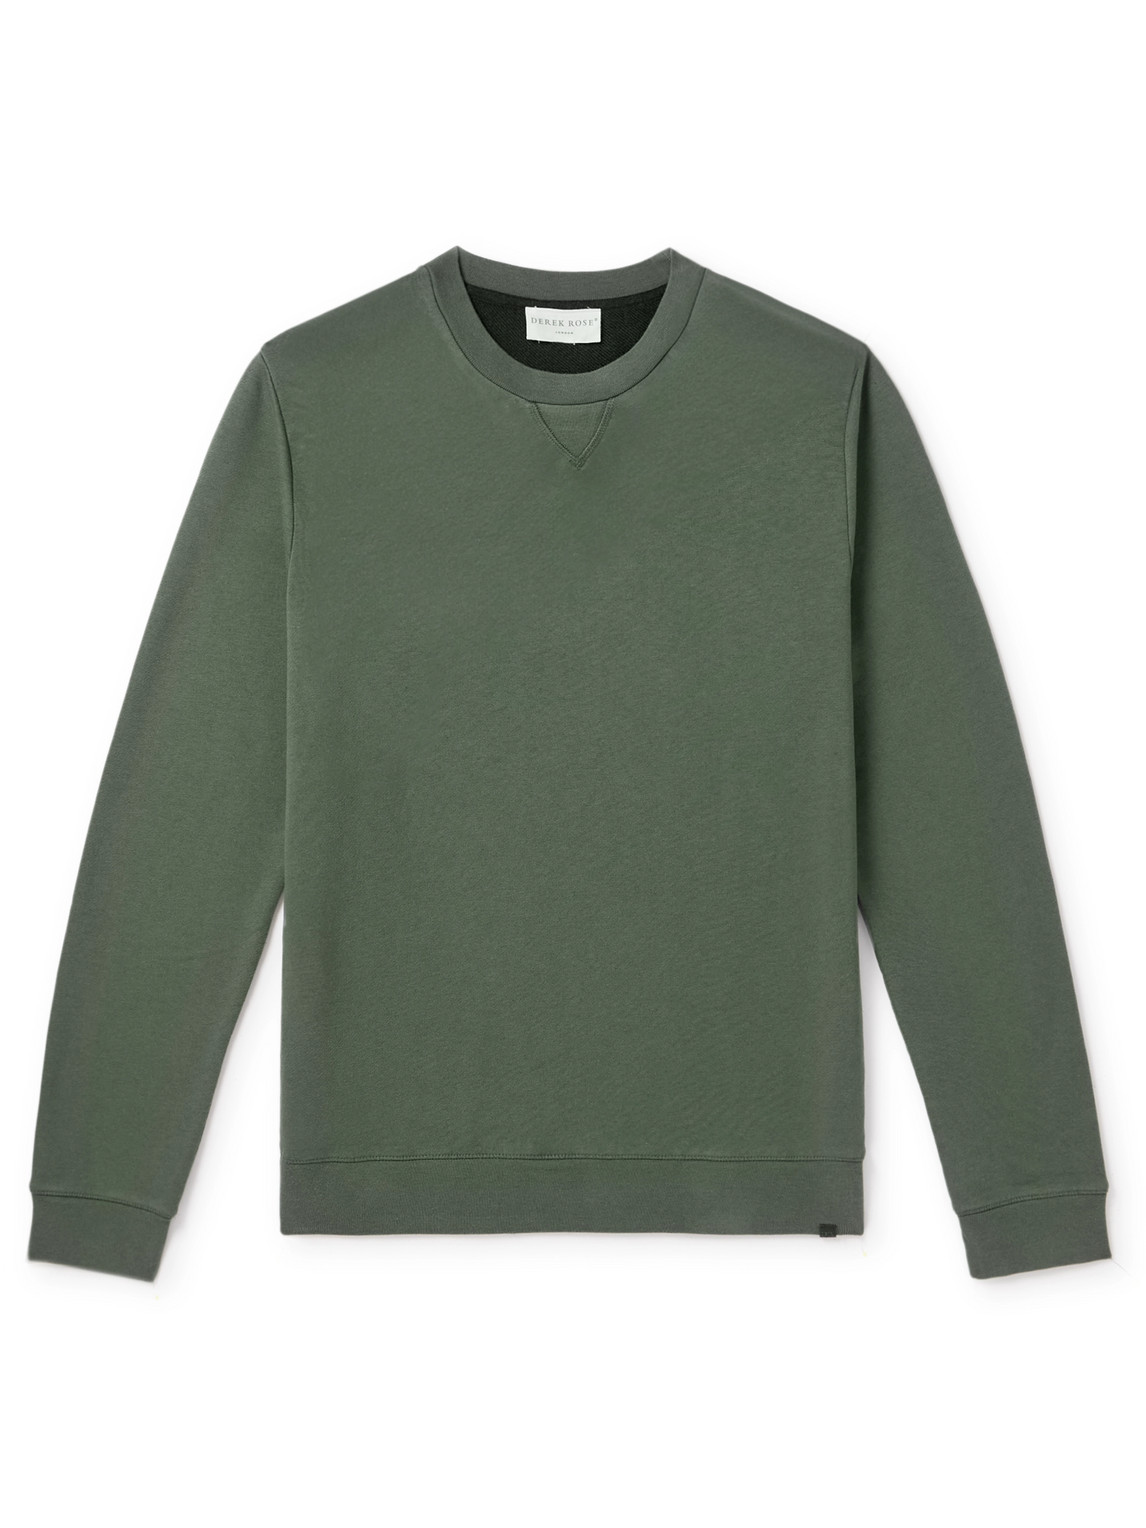 Quinn 1 Cotton and Modal-Blend Jersey Sweatshirt